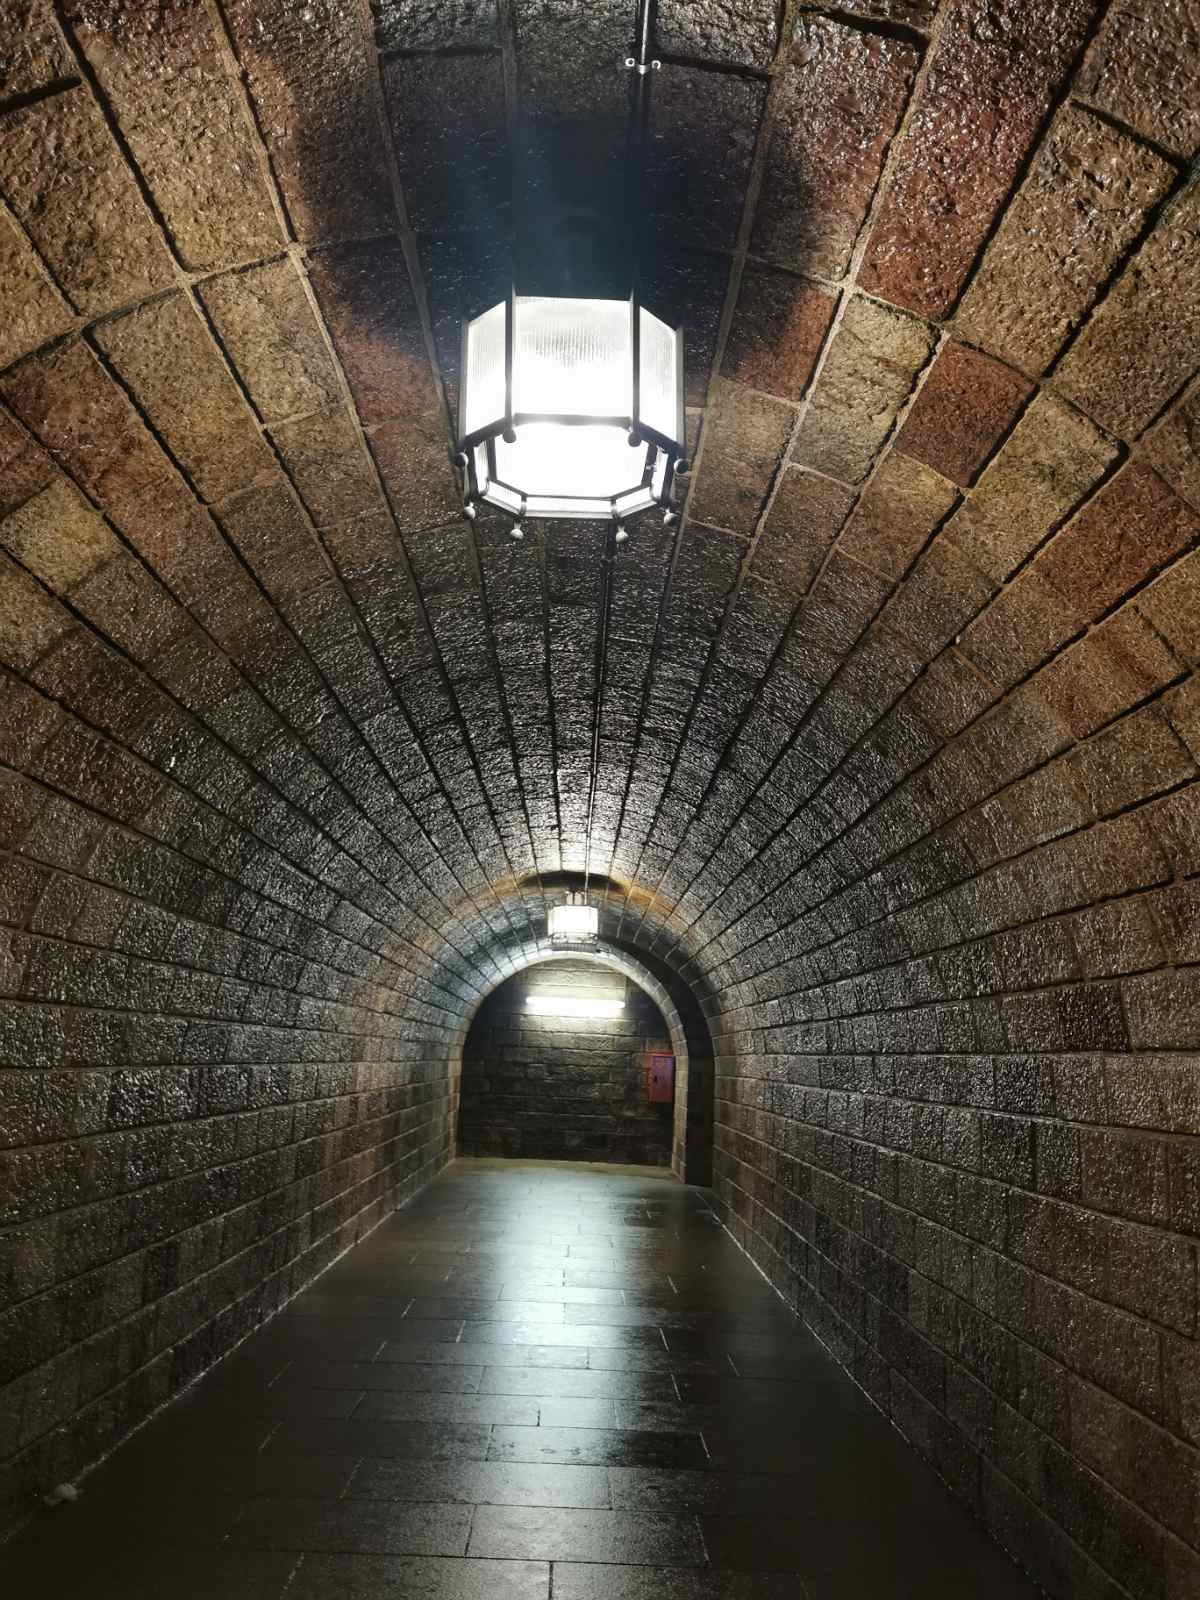 Tunel koji vodi do lifta,, dug 124 metra kroz brdo, izgled nepromenjen tokom osam i po decenija: mermerne pločice i originalno osvetljenje 